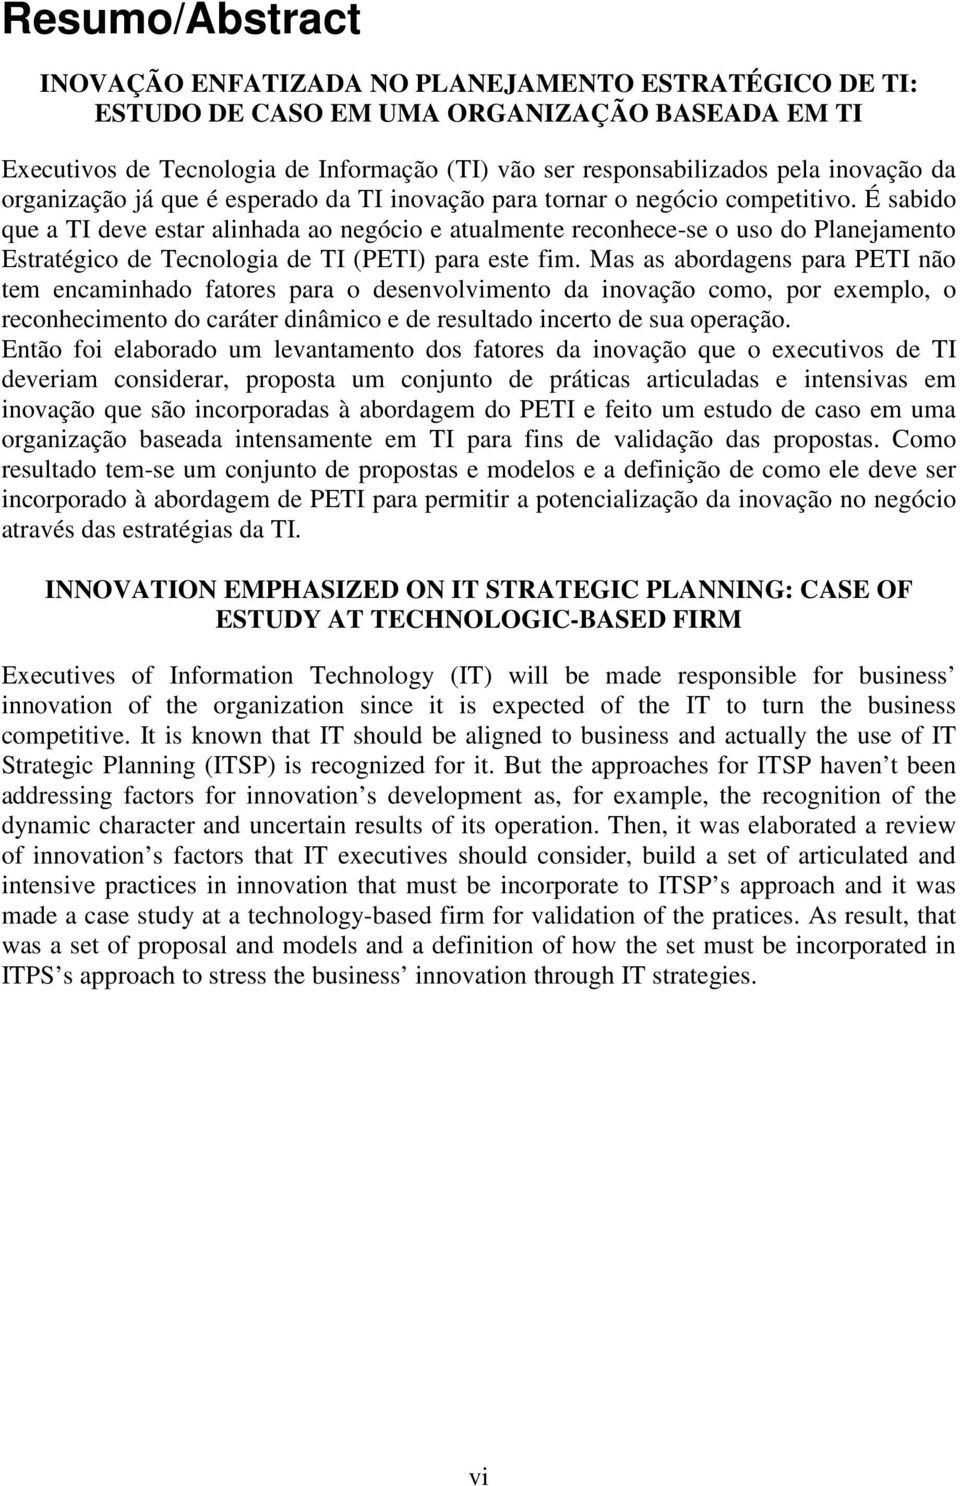 É sabido que a TI deve estar alinhada ao negócio e atualmente reconhece-se o uso do Planejamento Estratégico de Tecnologia de TI (PETI) para este fim.